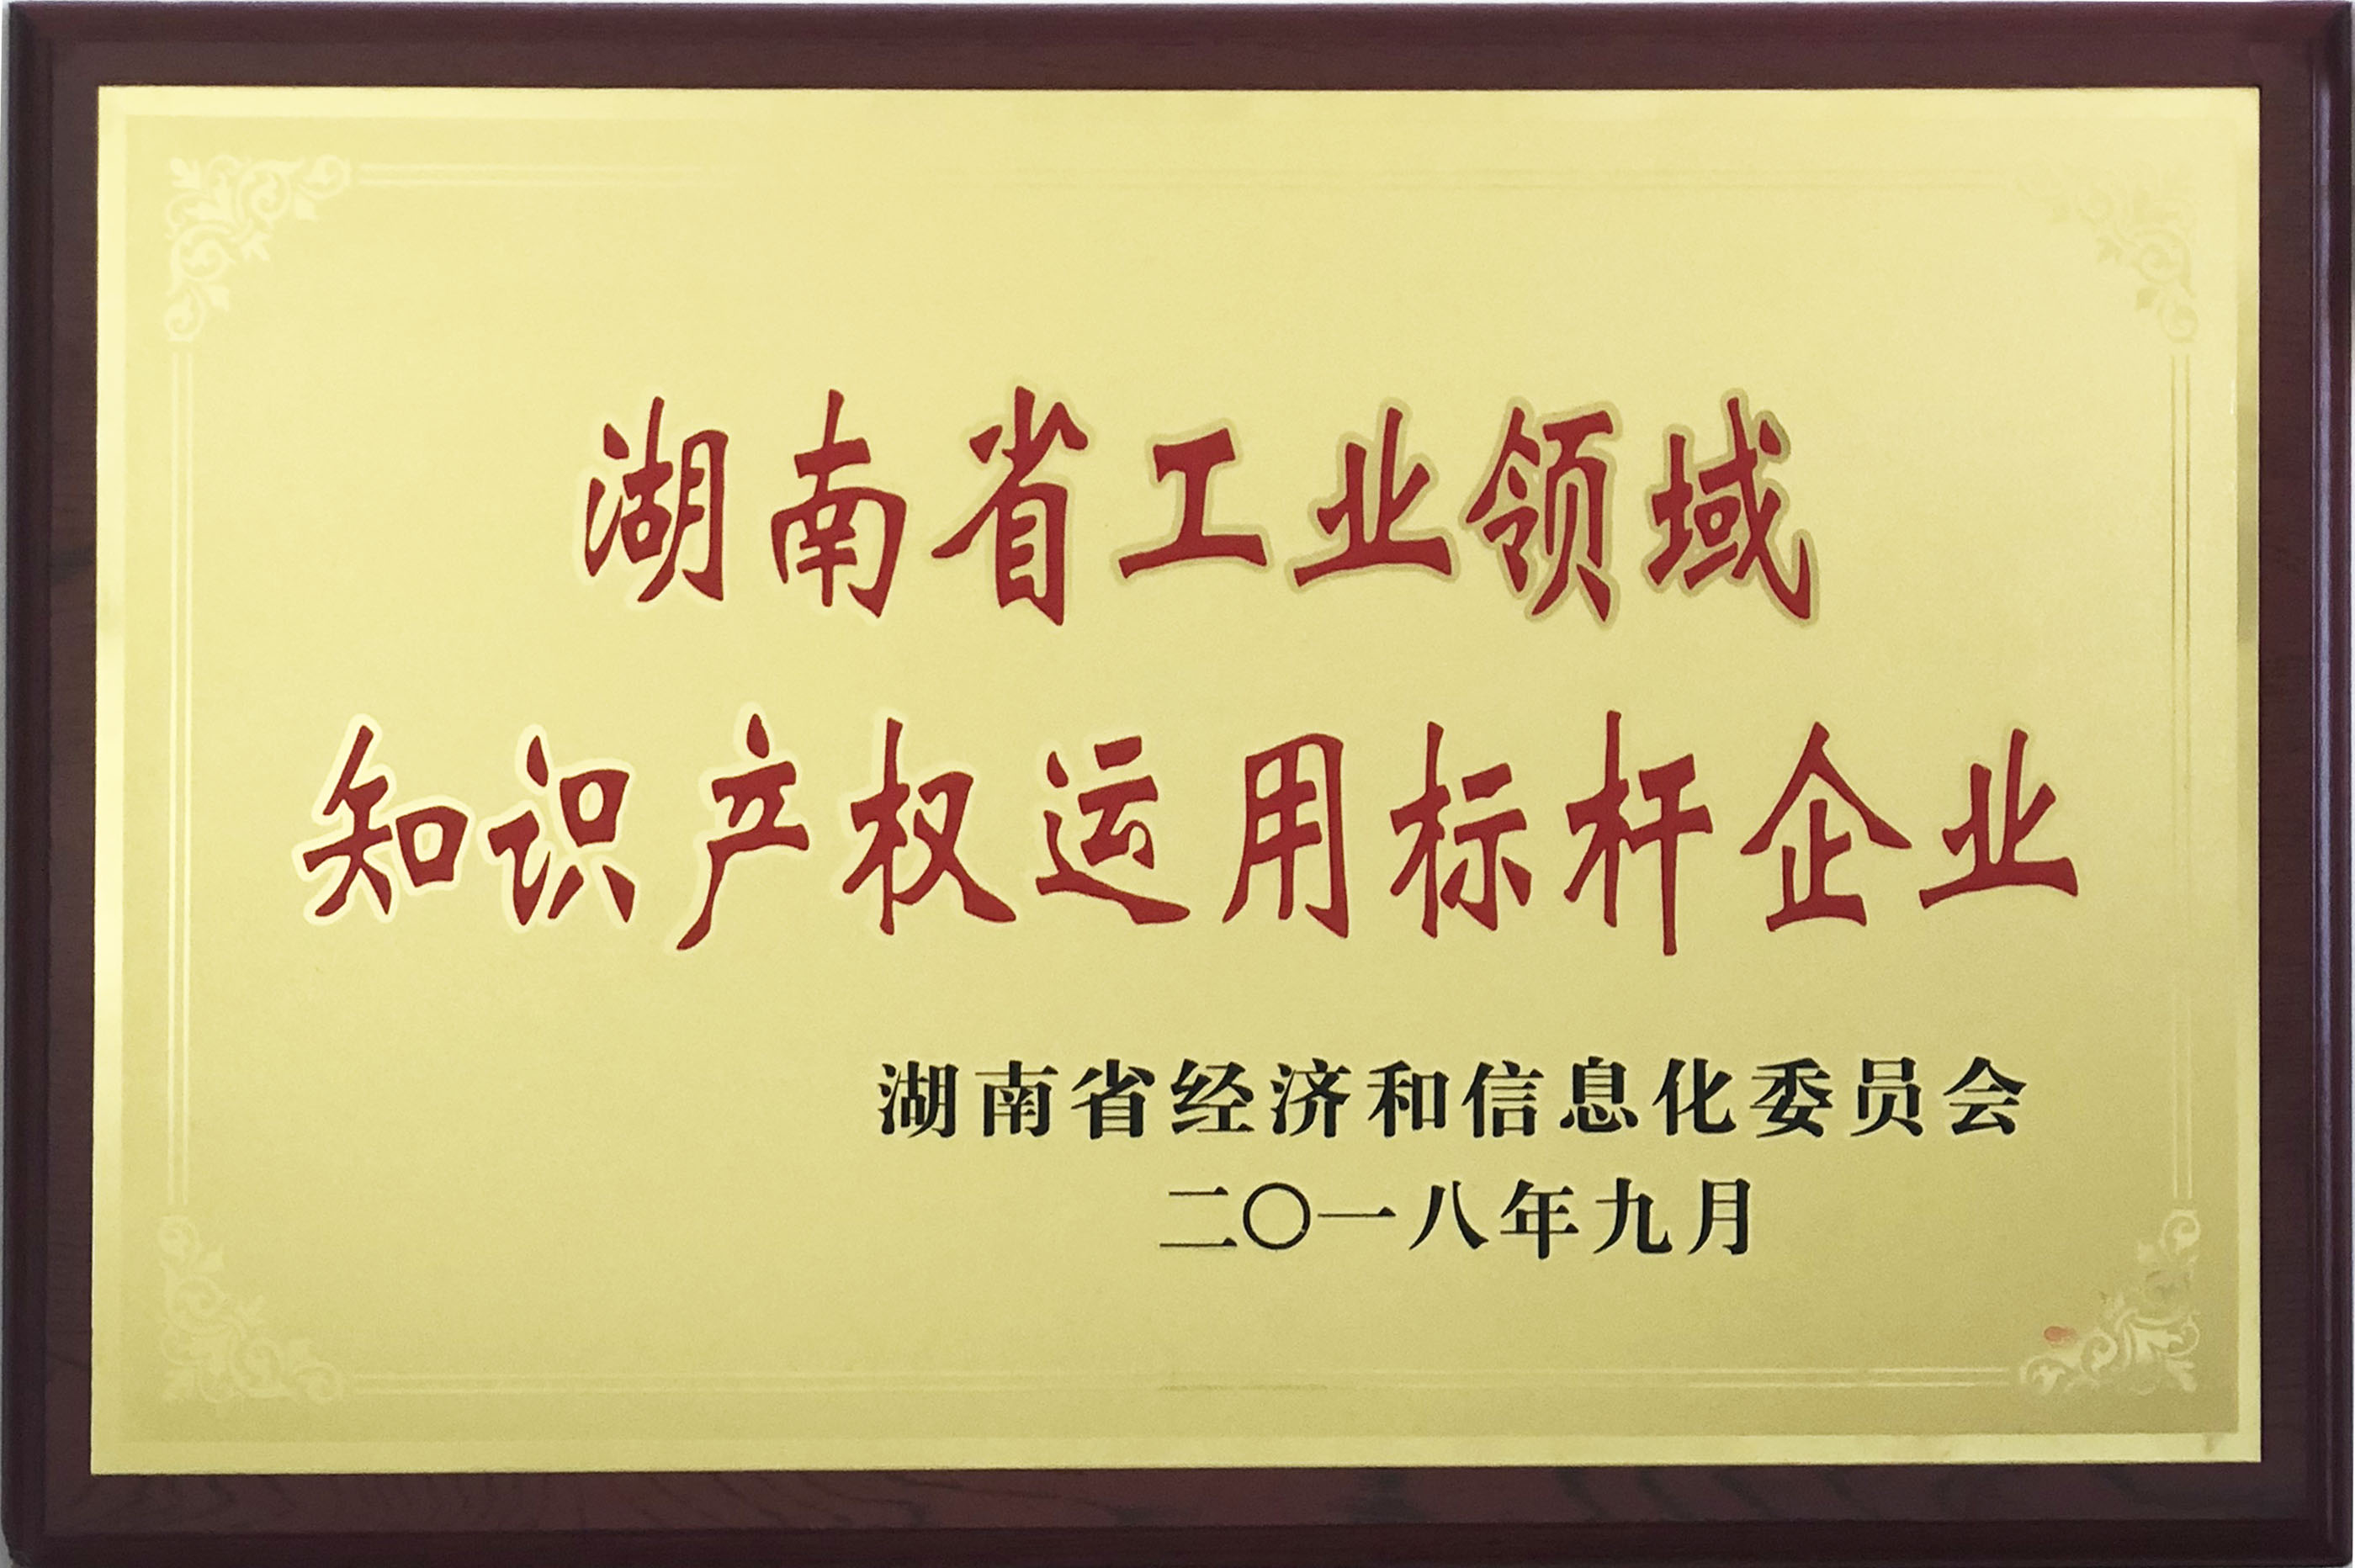 湖南省工業領域知識產權運用標桿企業